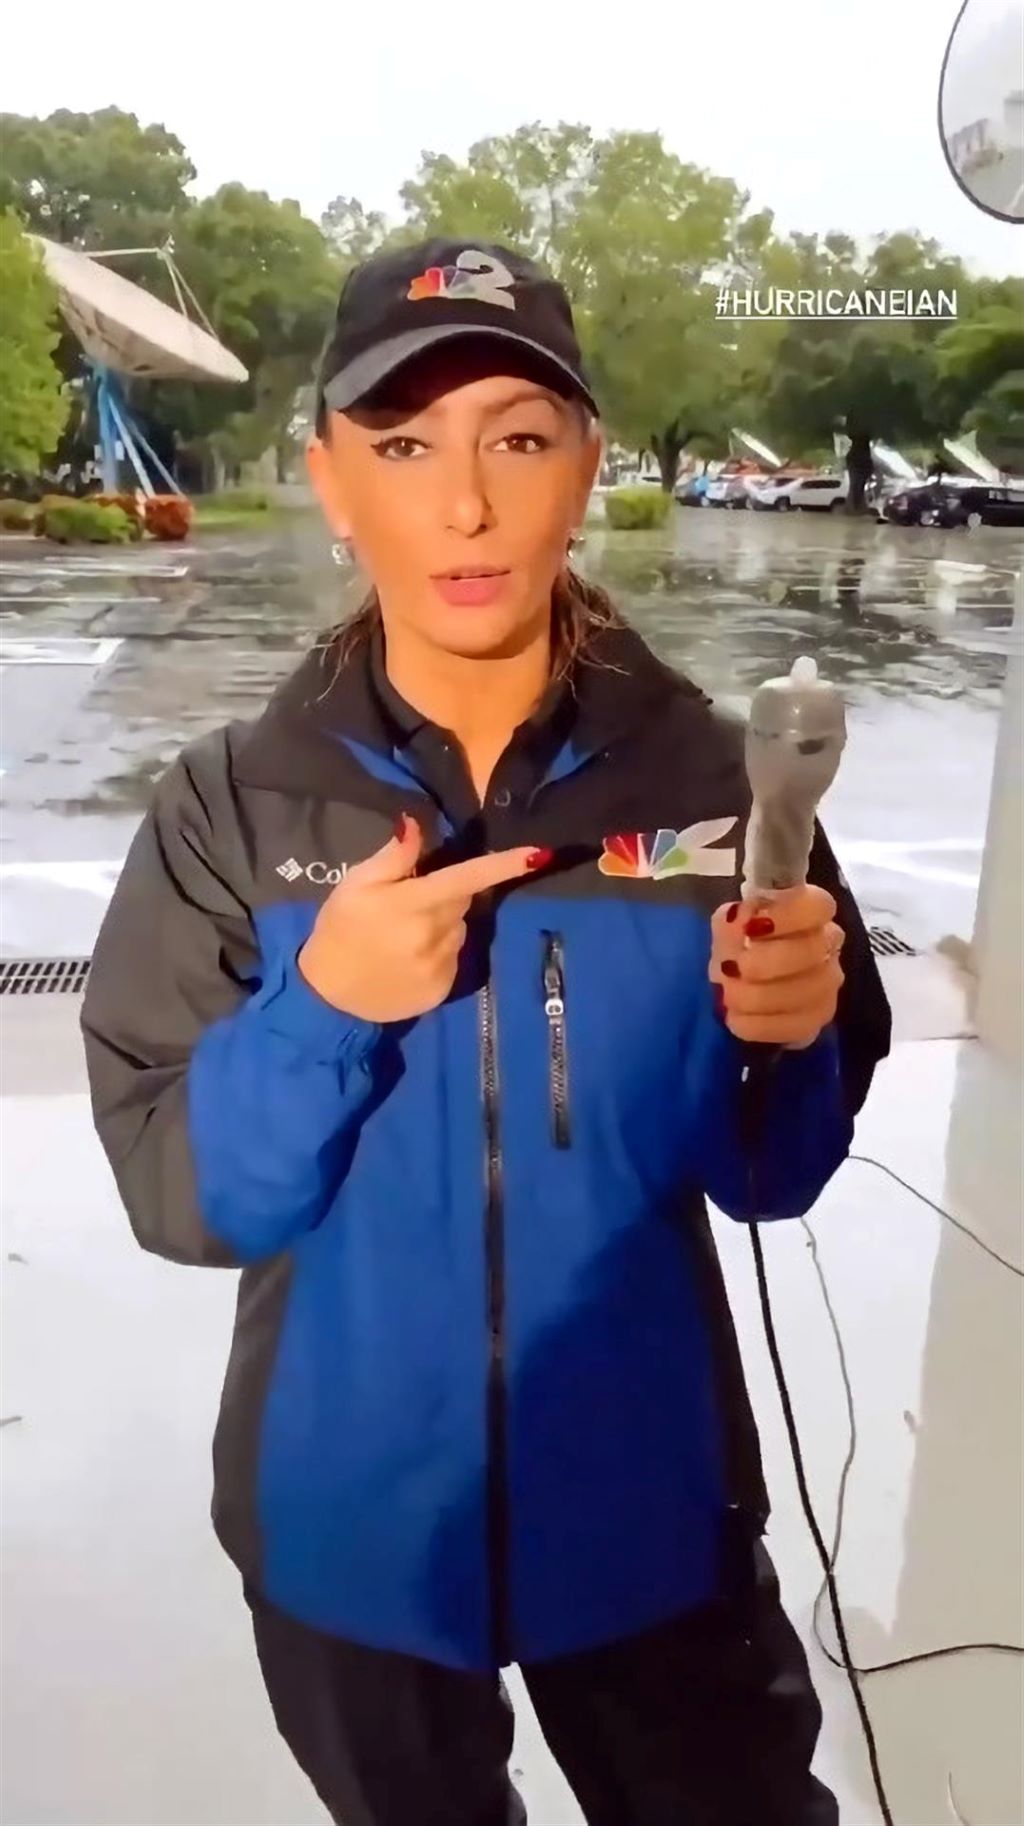 Reportera protege micrófono con un condón - noticiacn